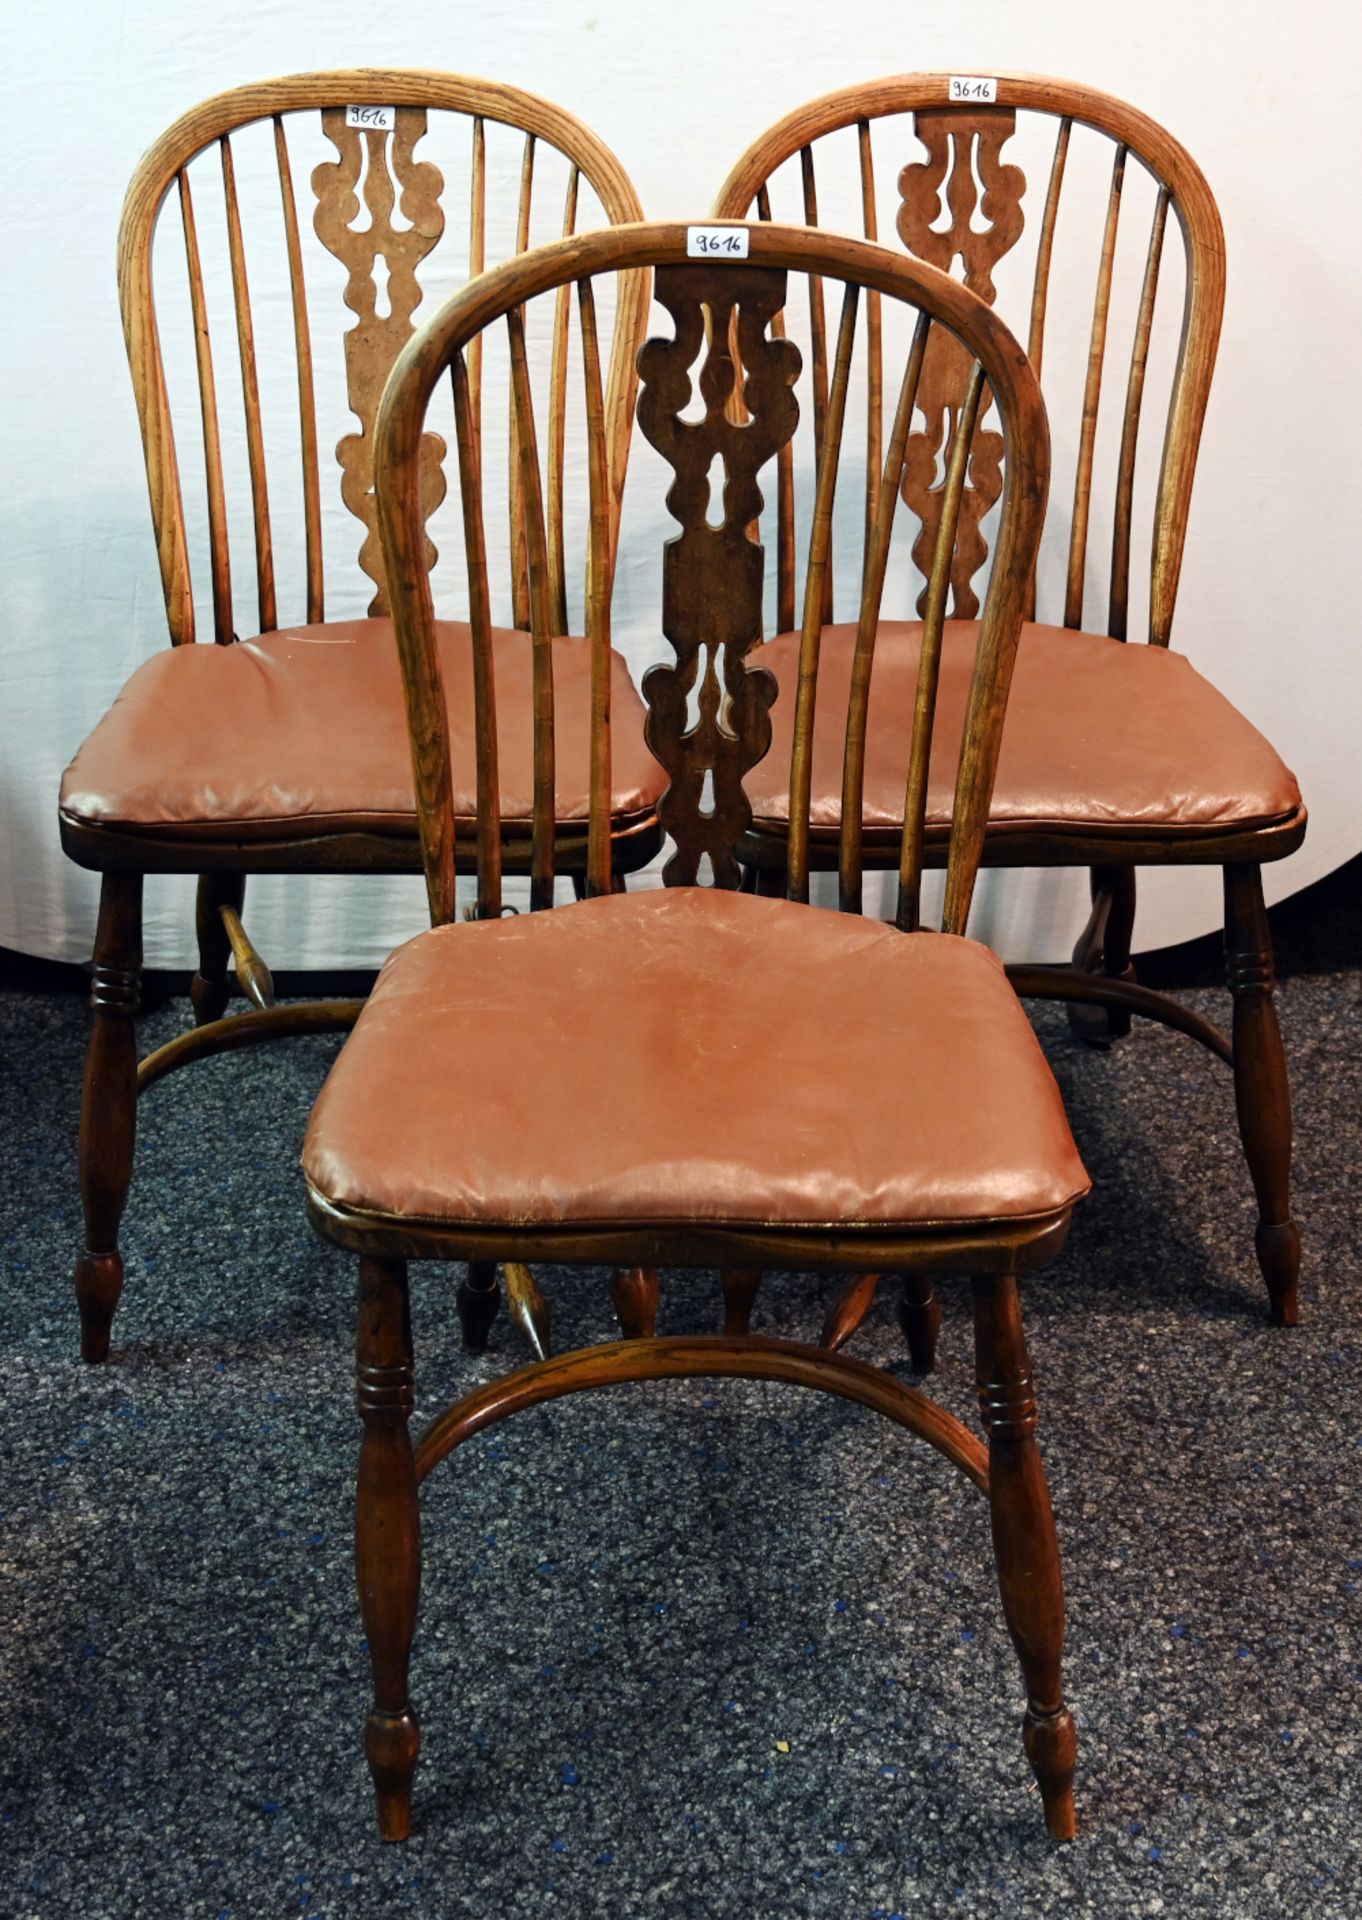 5 Stühle/1 Sitzbank im Windsor-Stil, davon 2 Armlehnstühle H. PANDER & ZONEN, Dänemark Modellnr. P 5 - Bild 2 aus 3